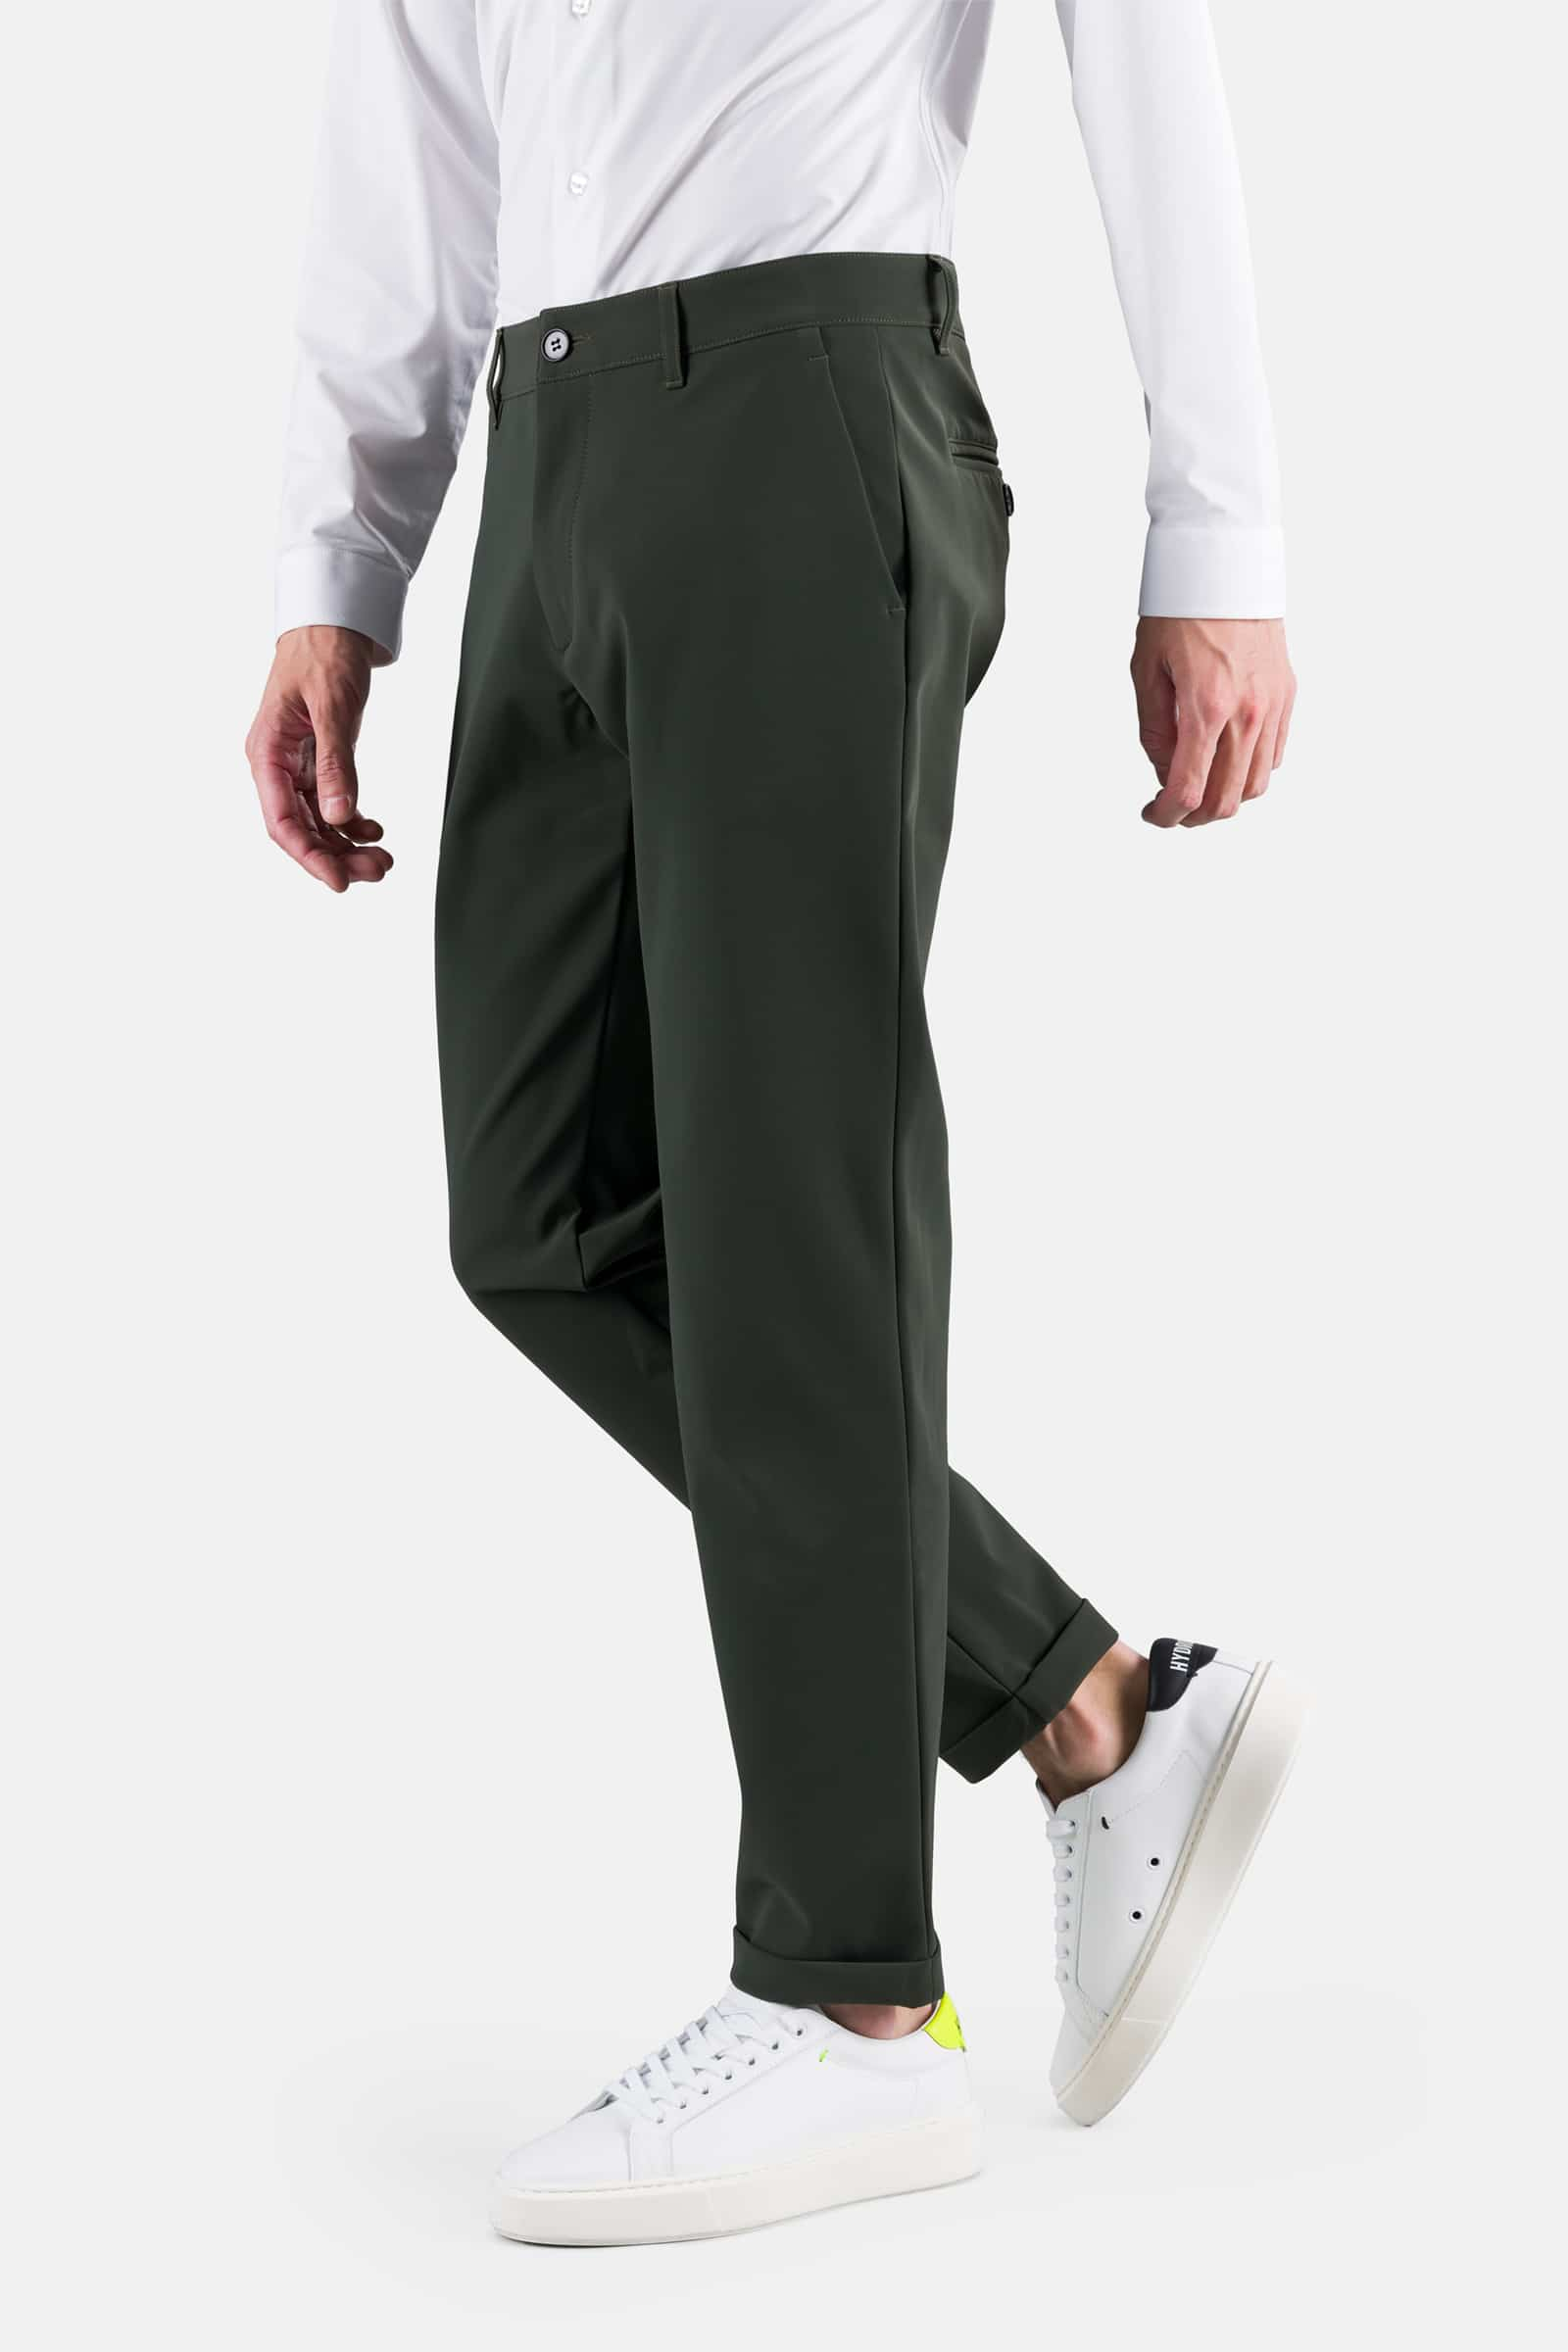 CLASSIC PANTS - Apparel - Outlet Hydrogen - Luxury Sportwear